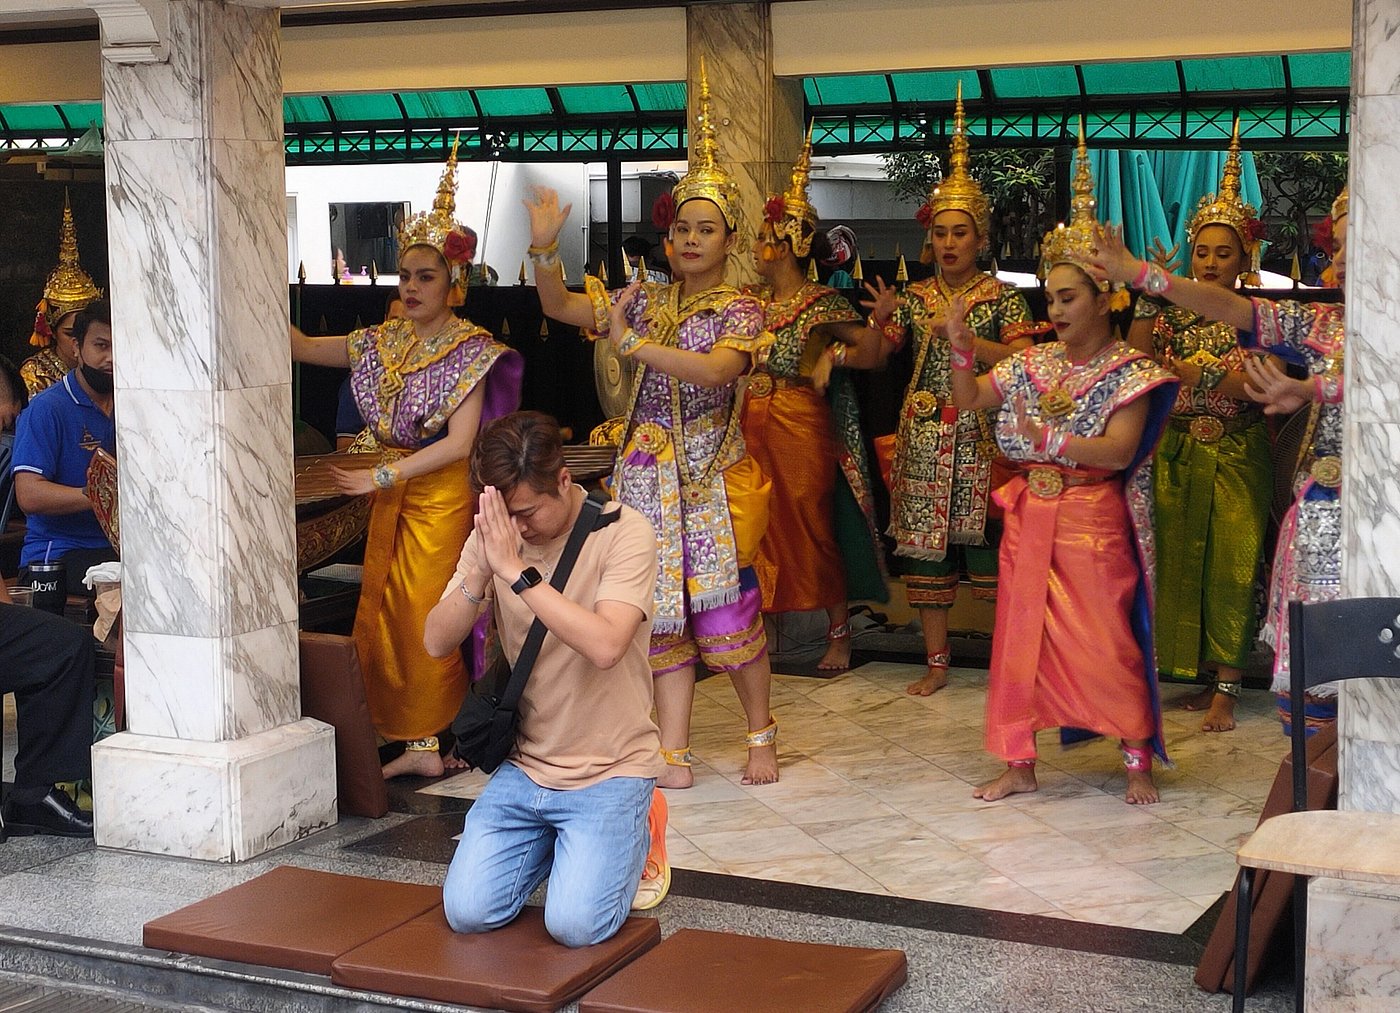 Thai folk dancers performing at Erawan shrine in Bangkok